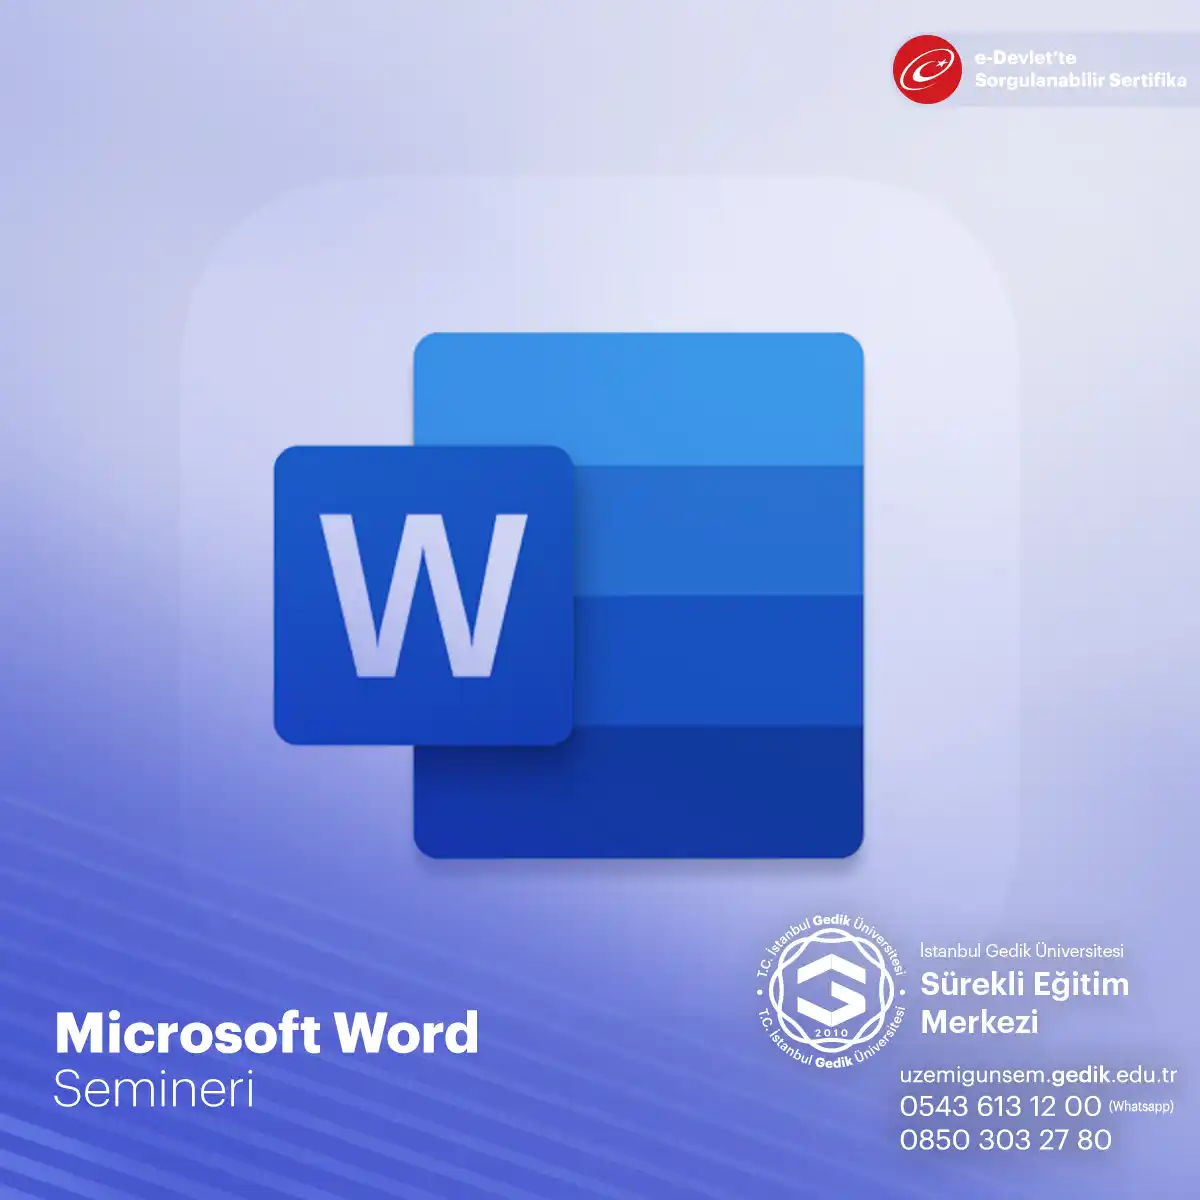 Microsoft Word, metin işleme ve belge oluşturma için dünya genelinde yaygın olarak kullanılan bir yazılımdır. 